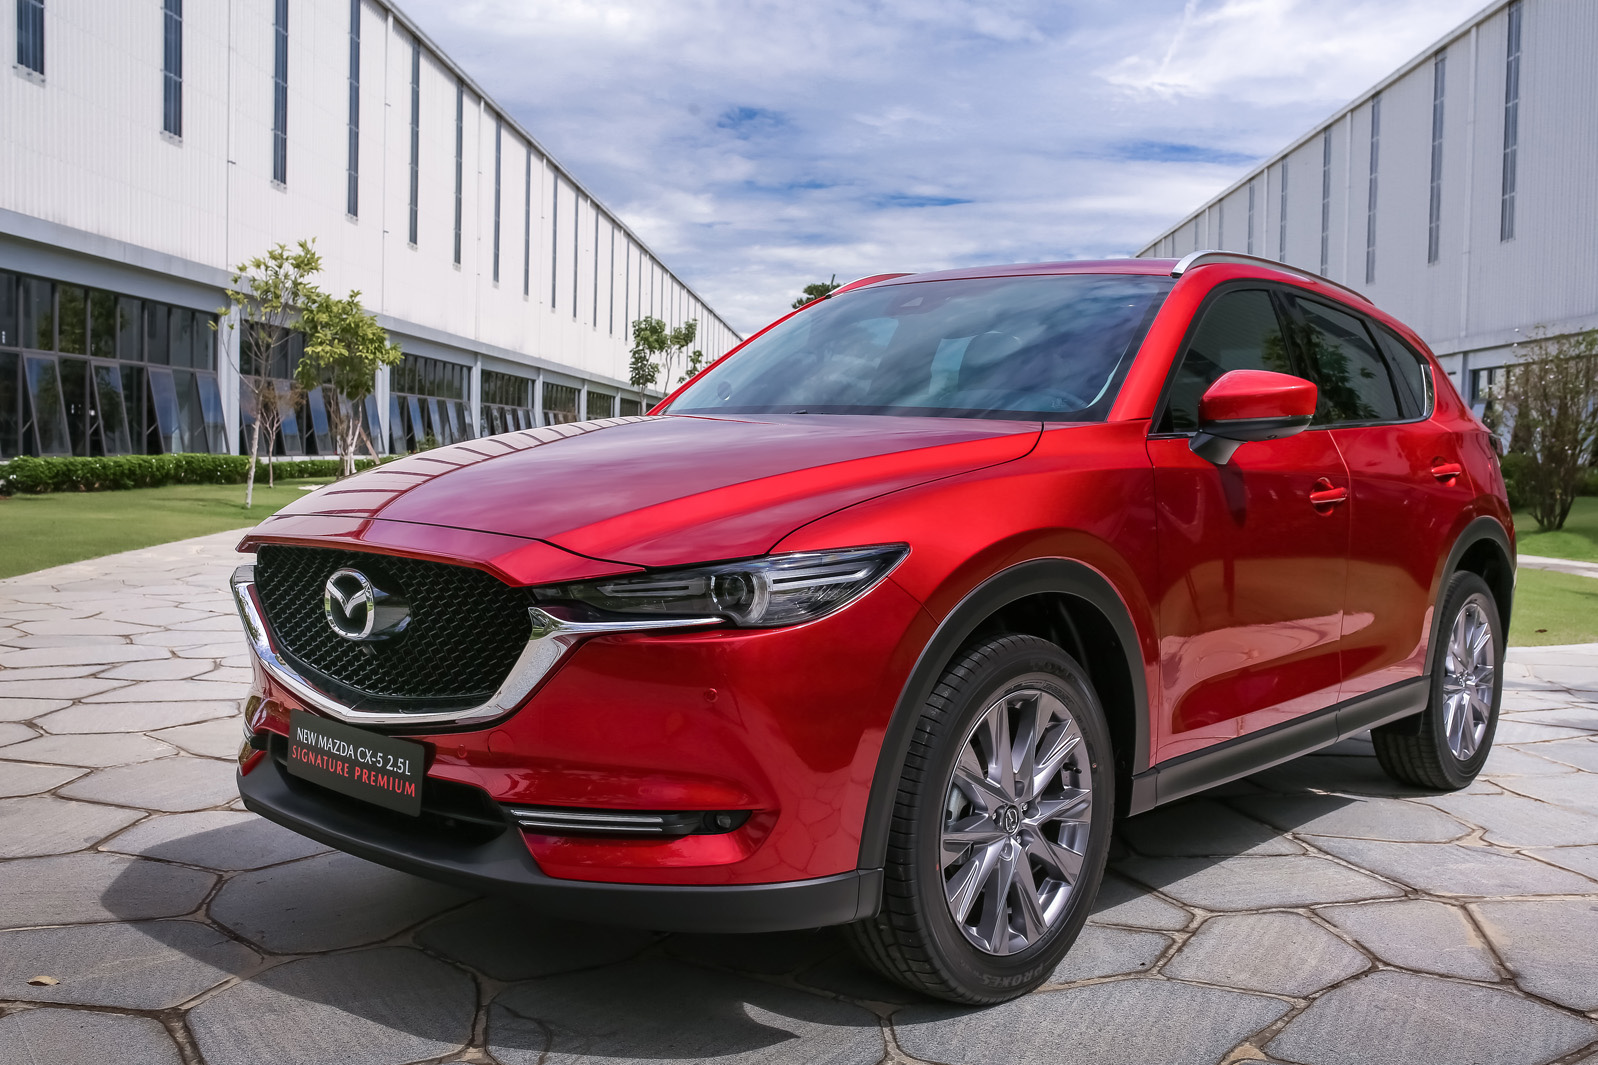 SUV hạng C bán chạy nhất tháng 1/2021: Mazda CX-5 bán gấp 3 lần Honda CR-V